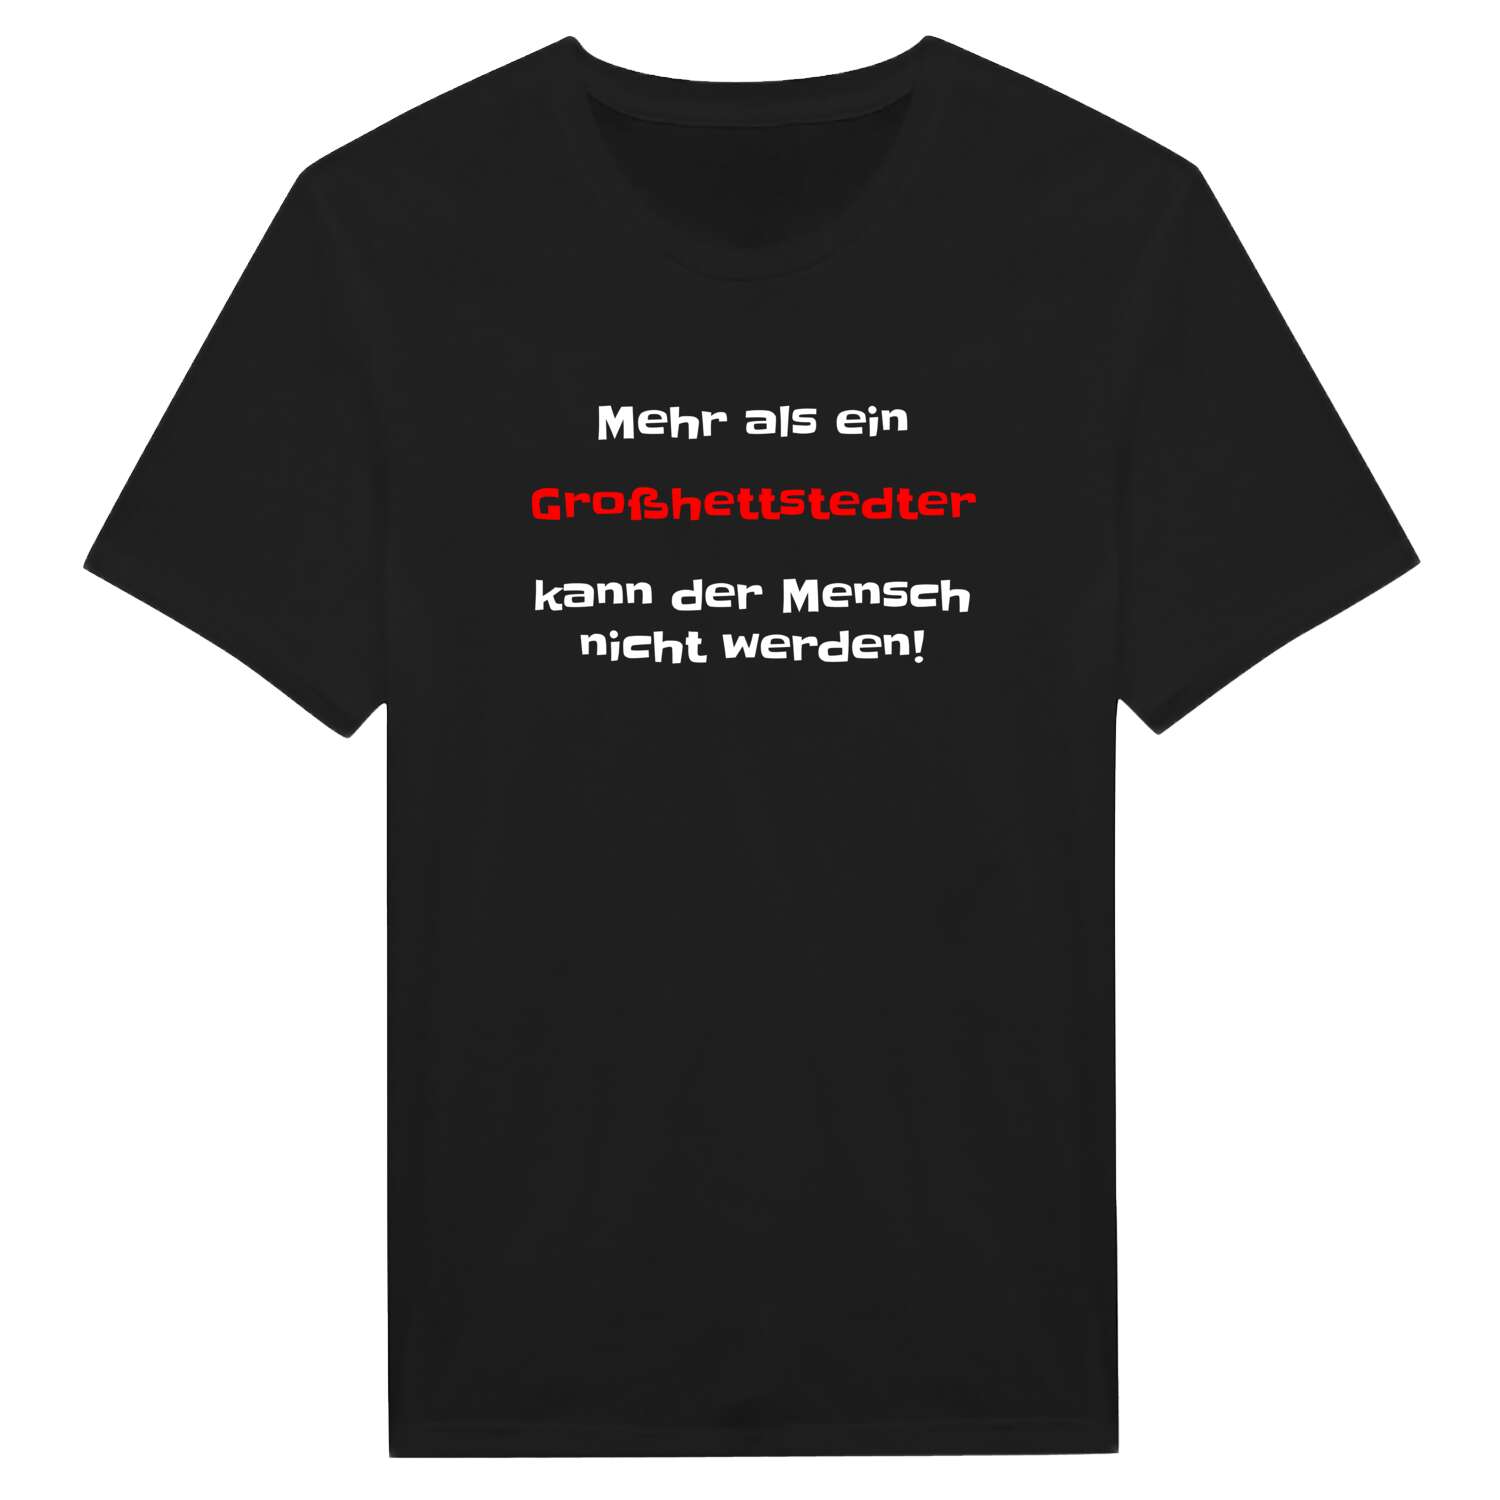 Großhettstedt T-Shirt »Mehr als ein«